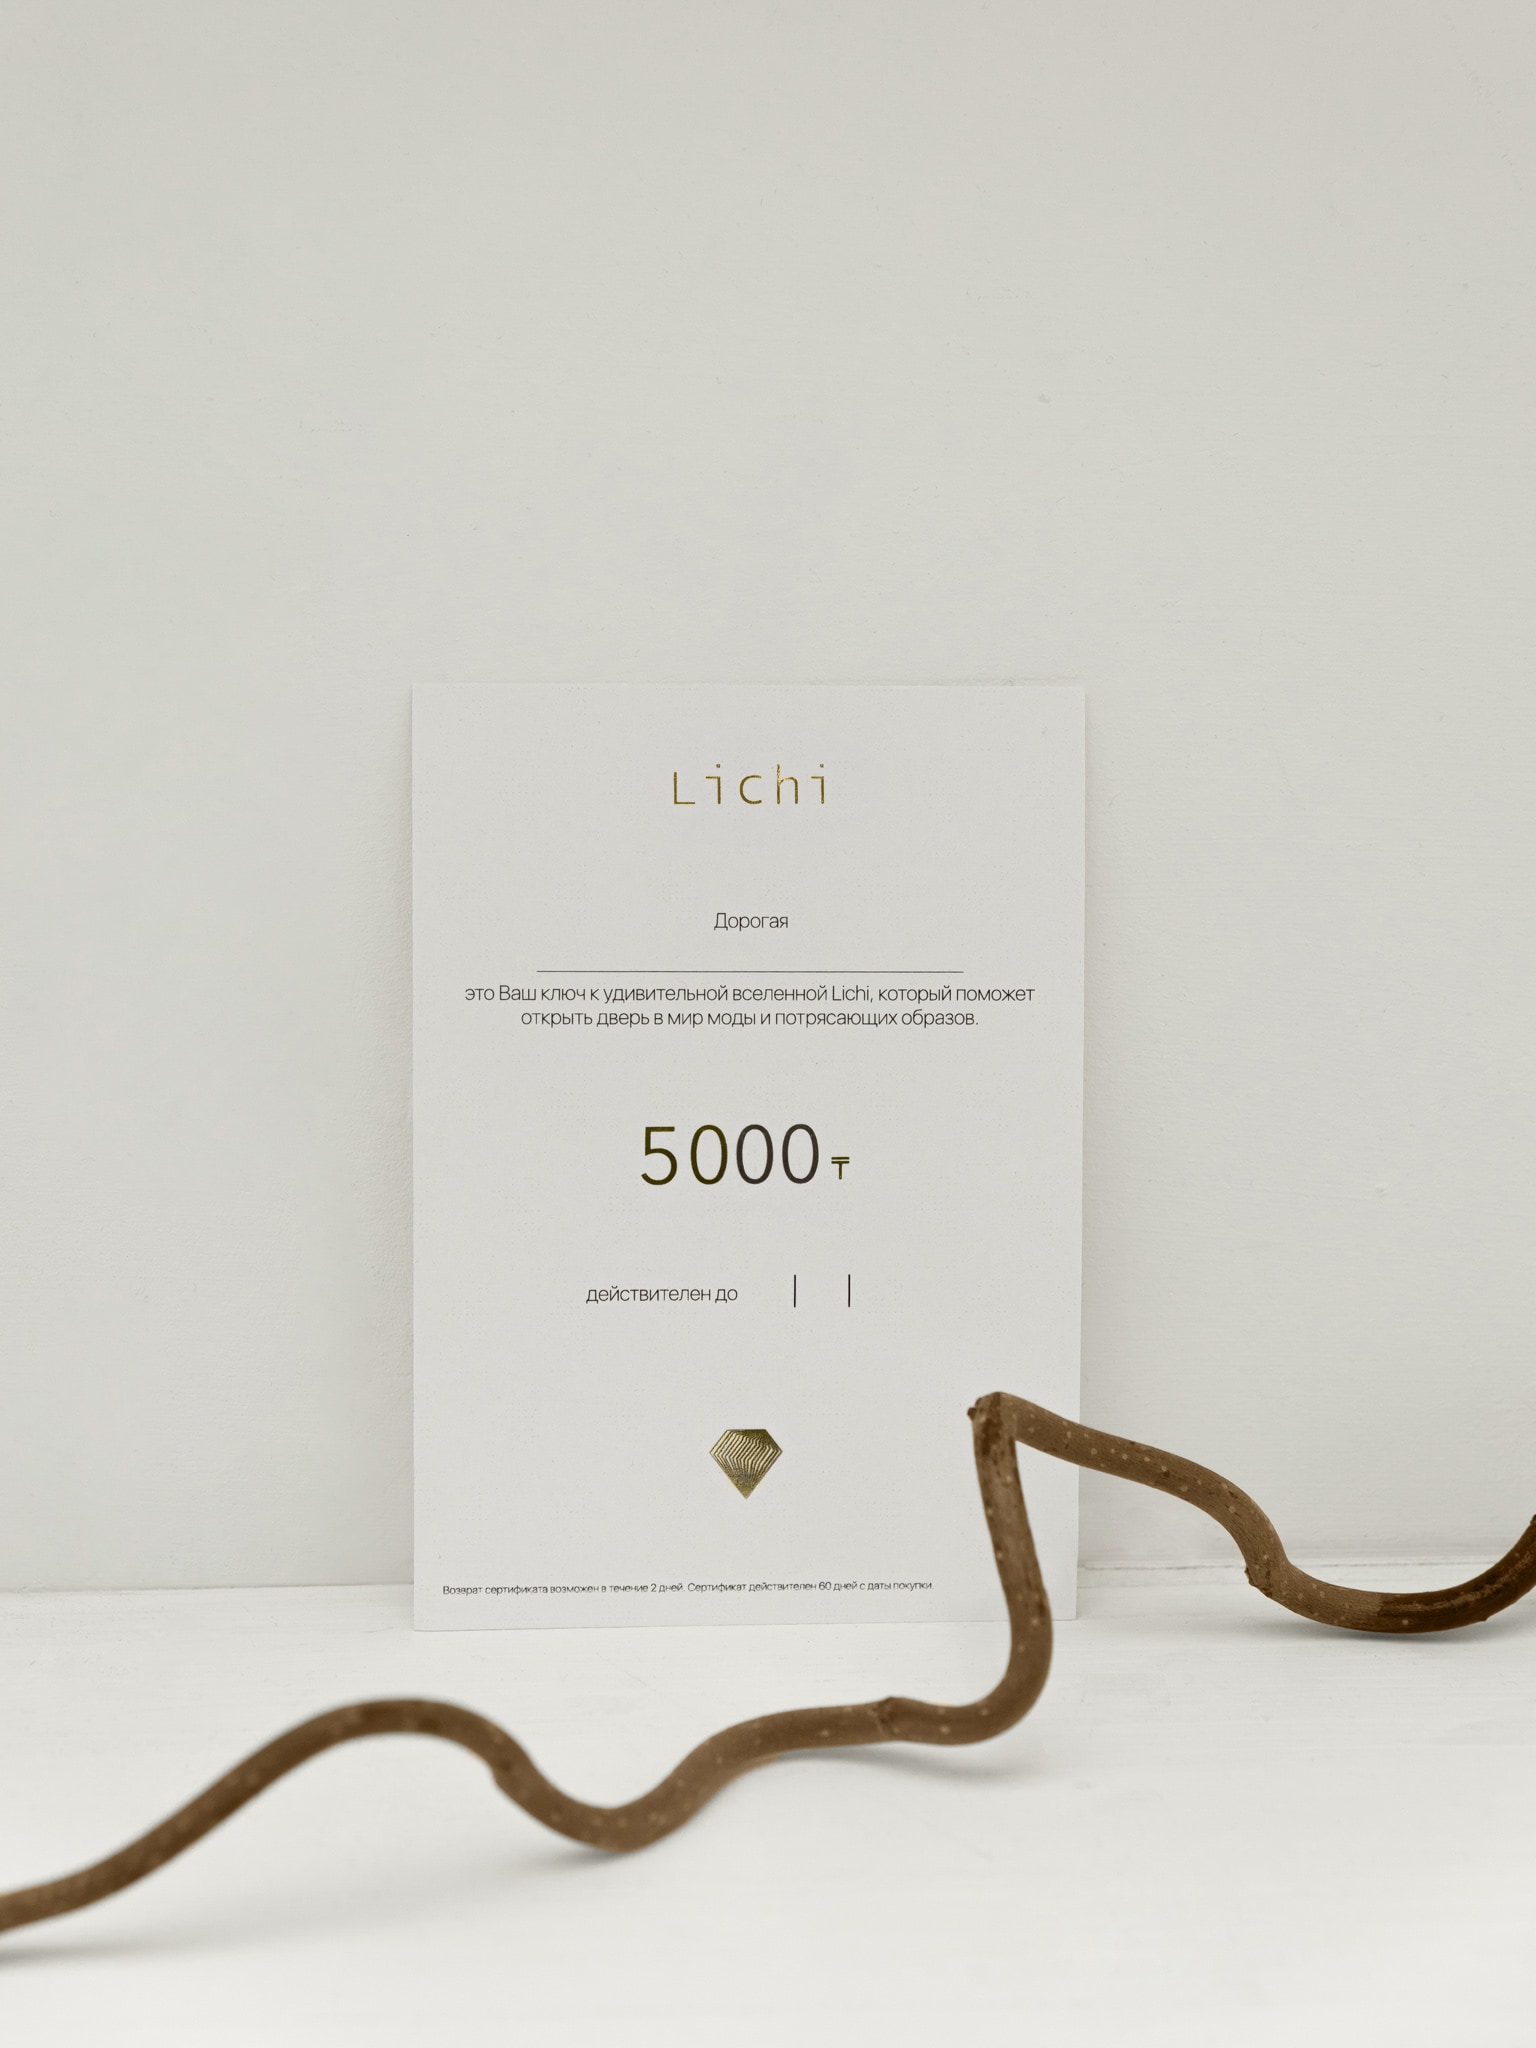 Подарочный сертификат Lichi